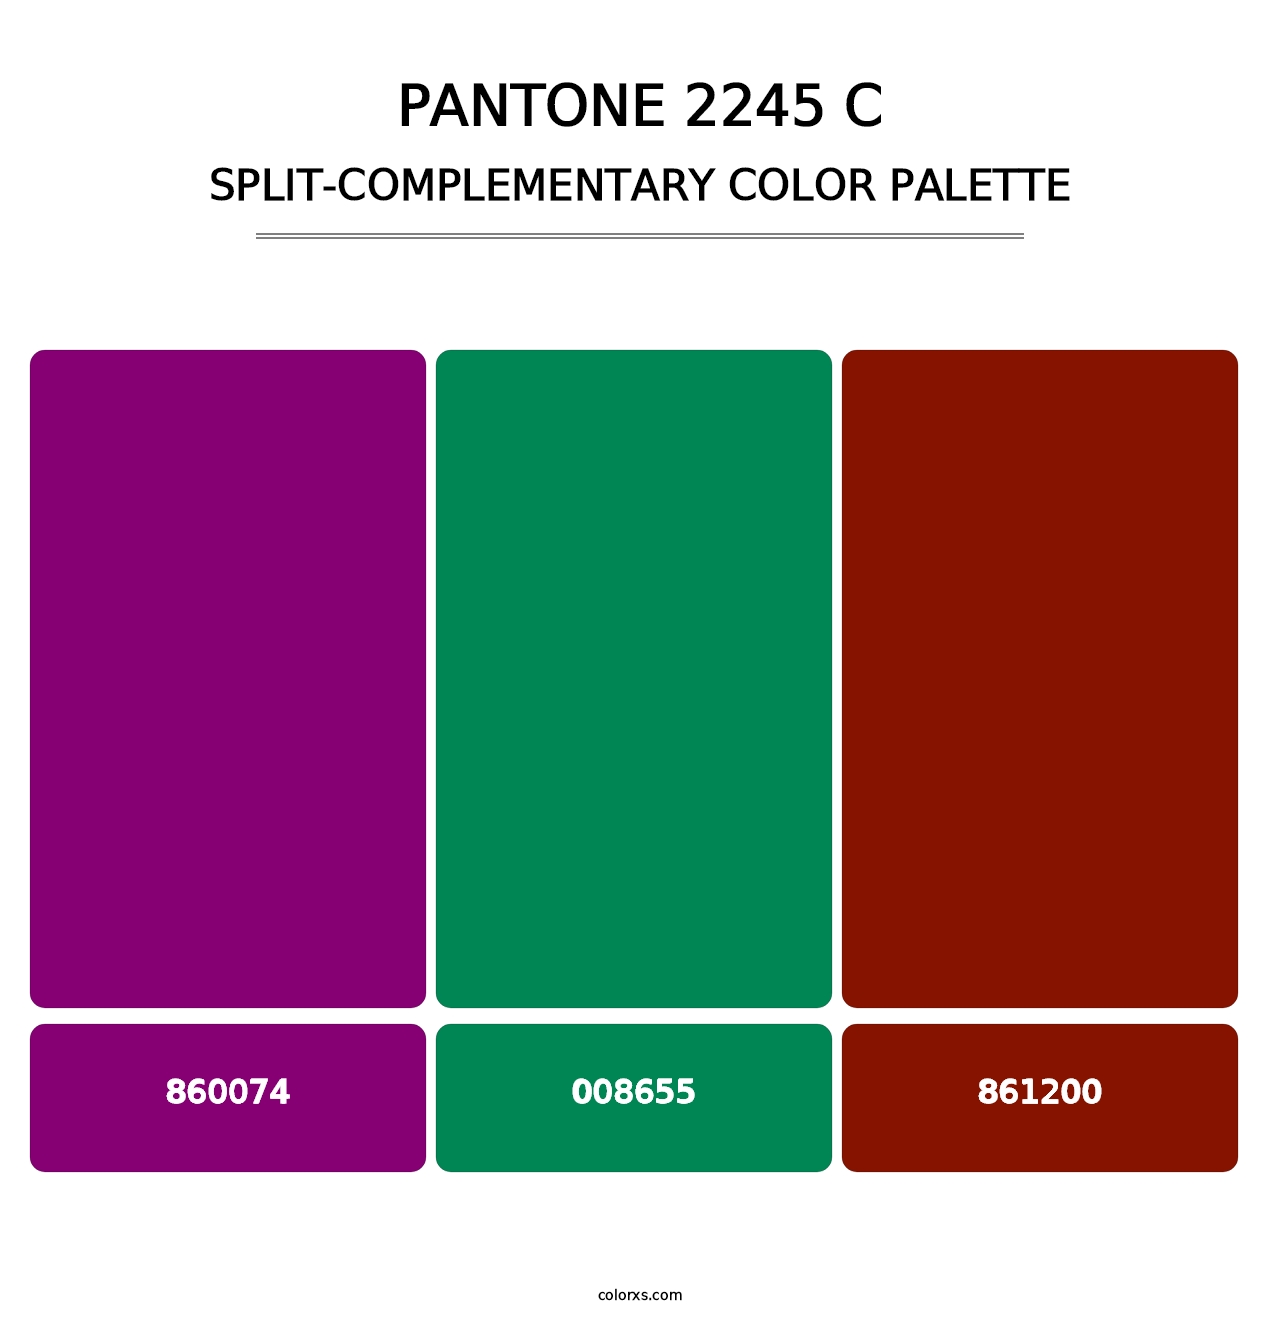 PANTONE 2245 C - Split-Complementary Color Palette